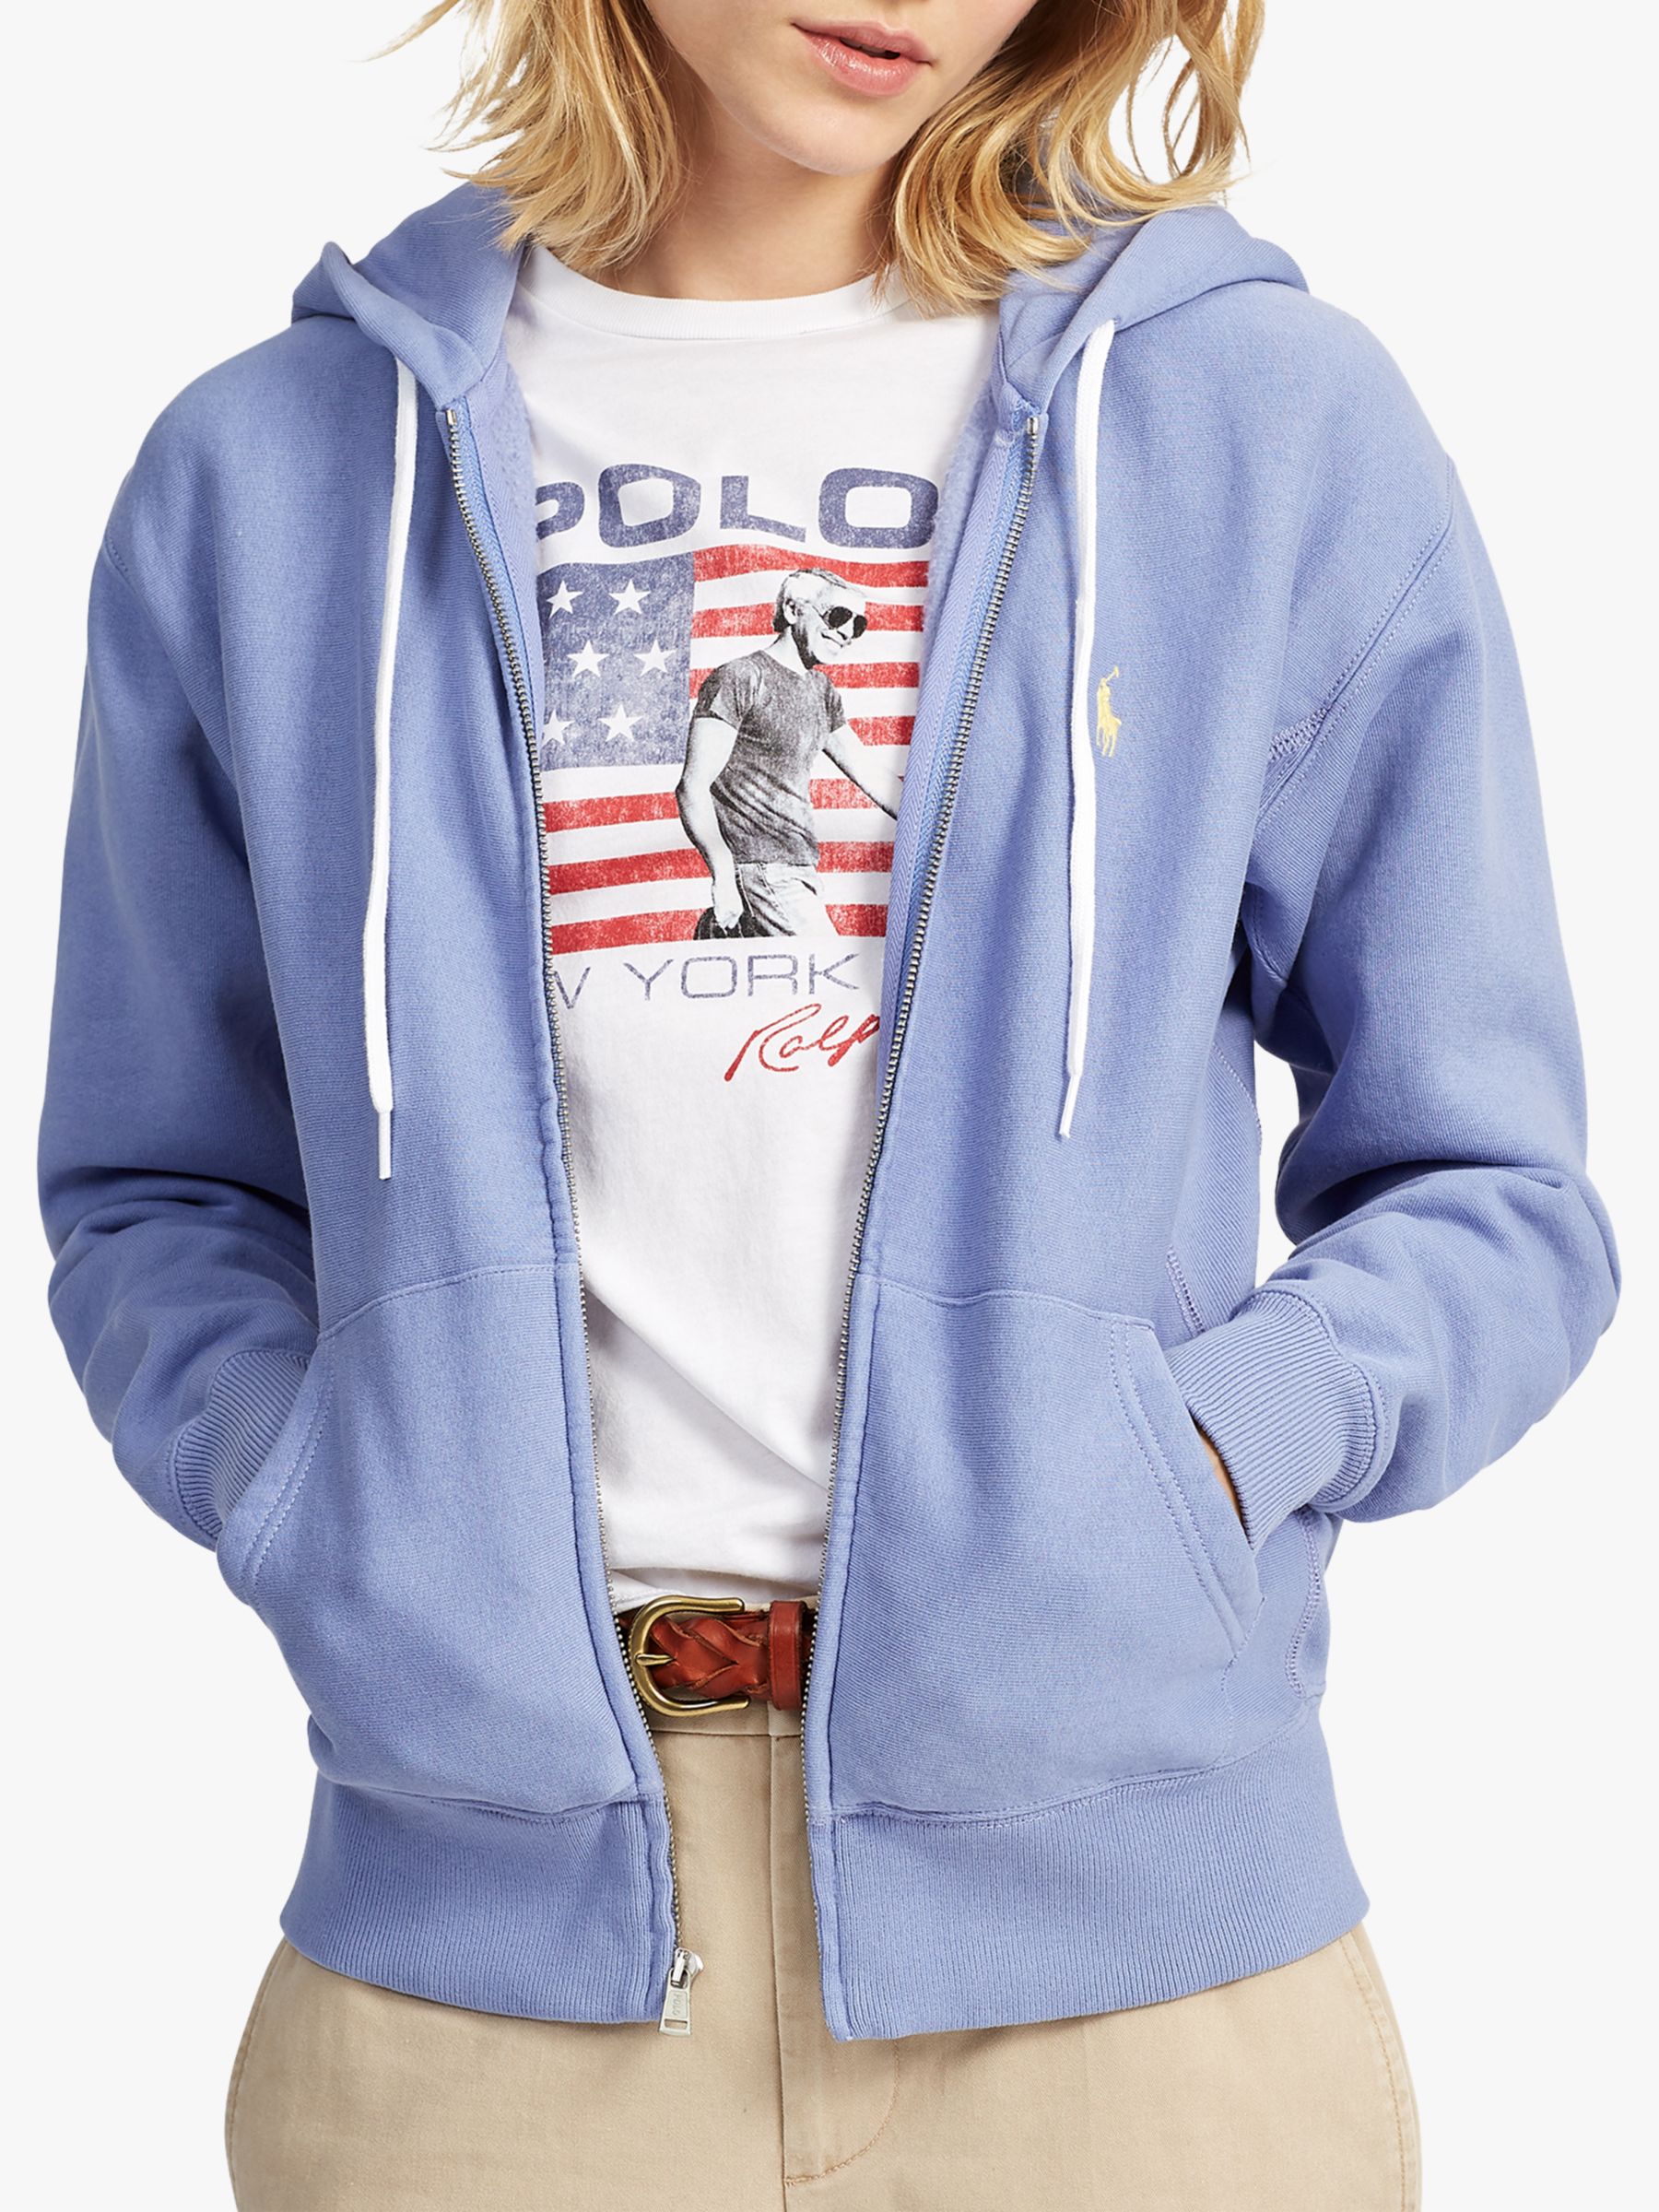 ralph lauren zip hoodie women's